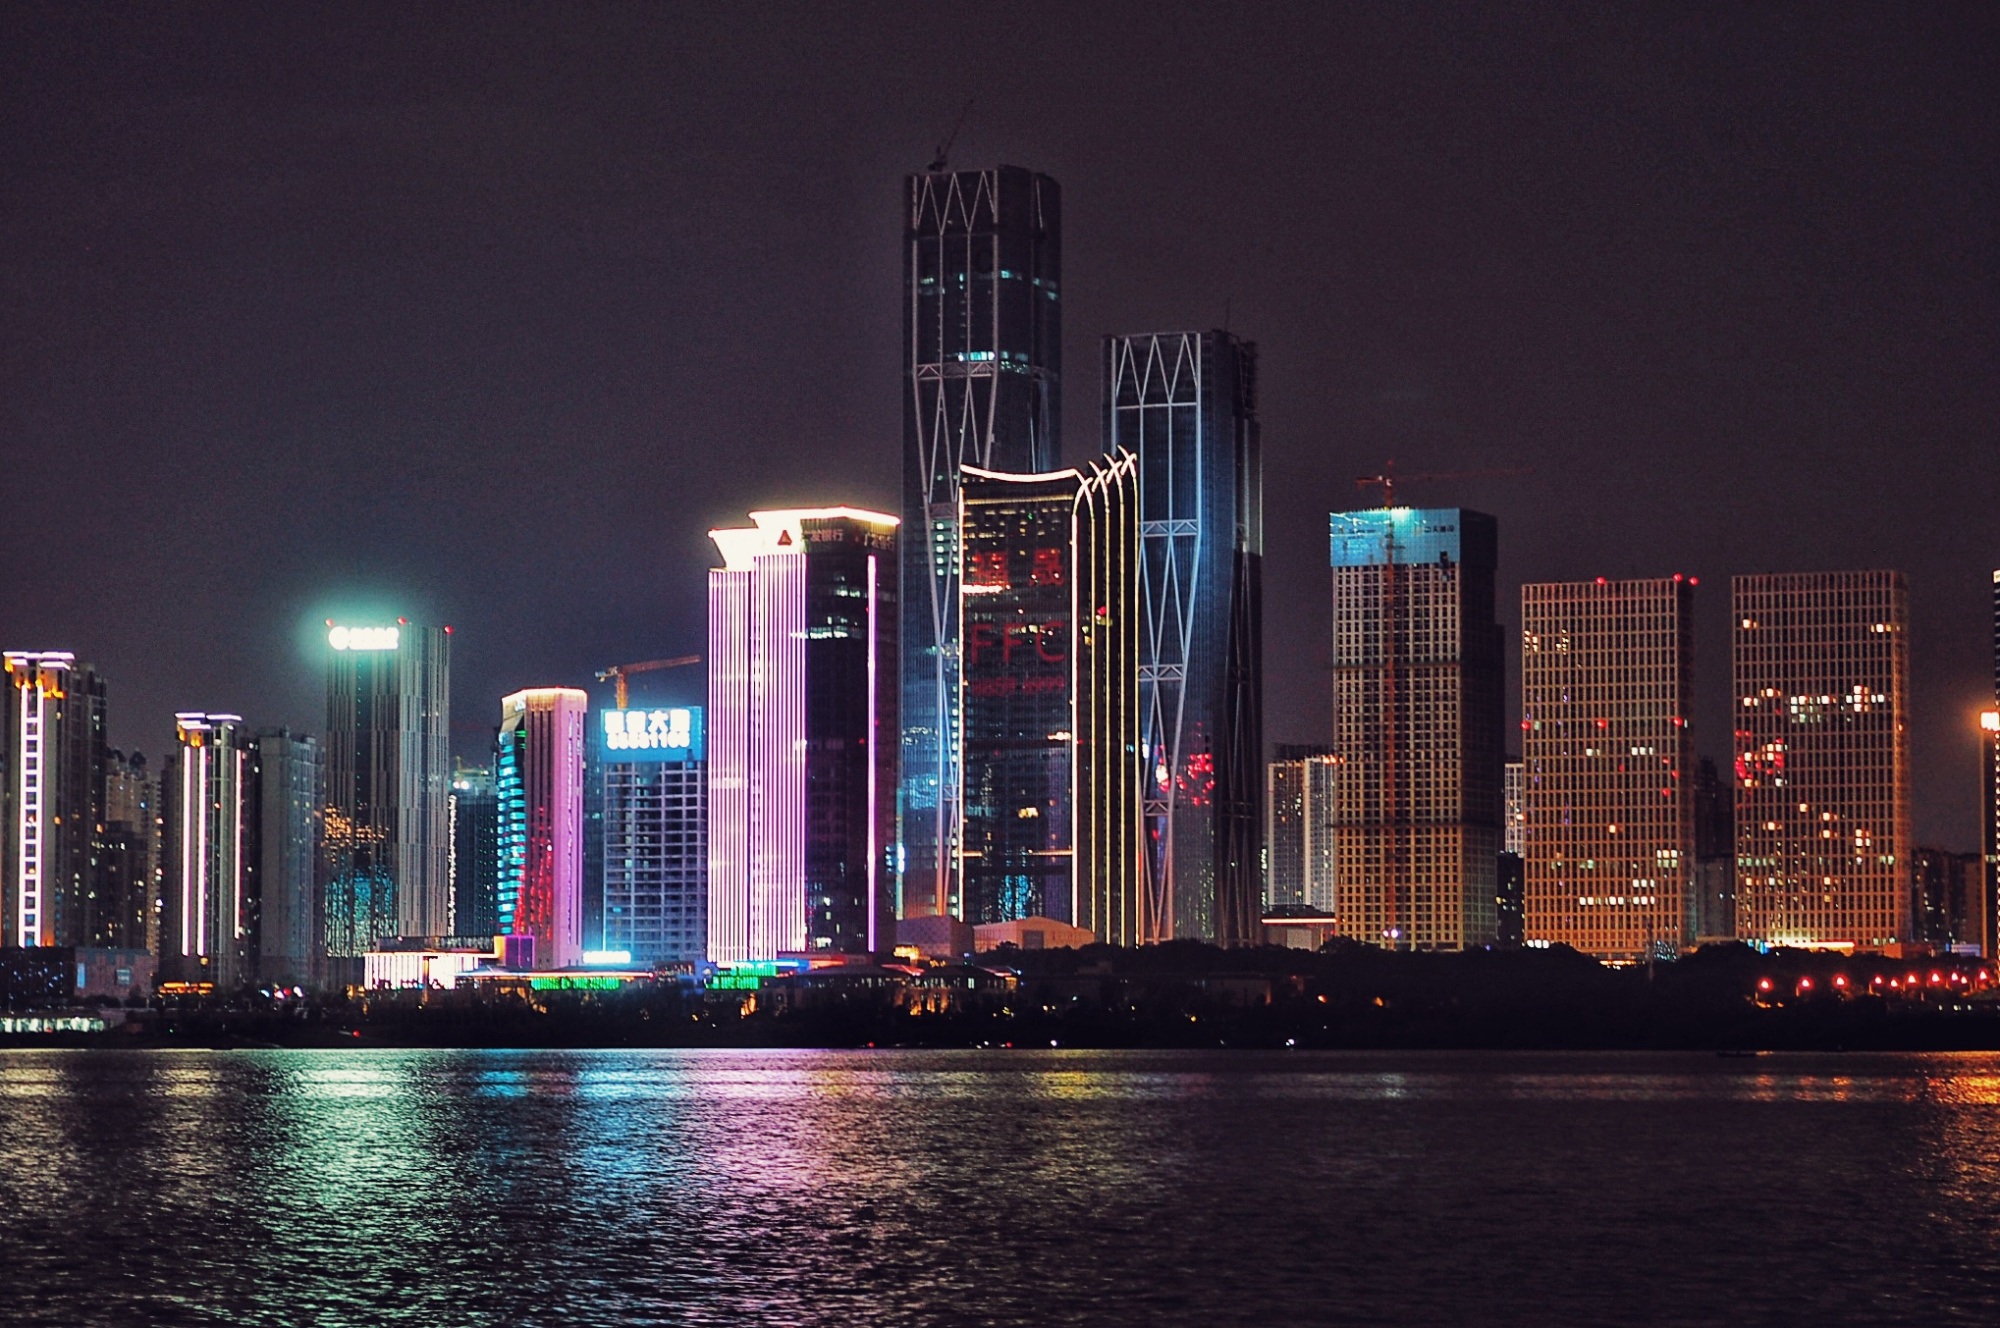 长沙市区夜景图片